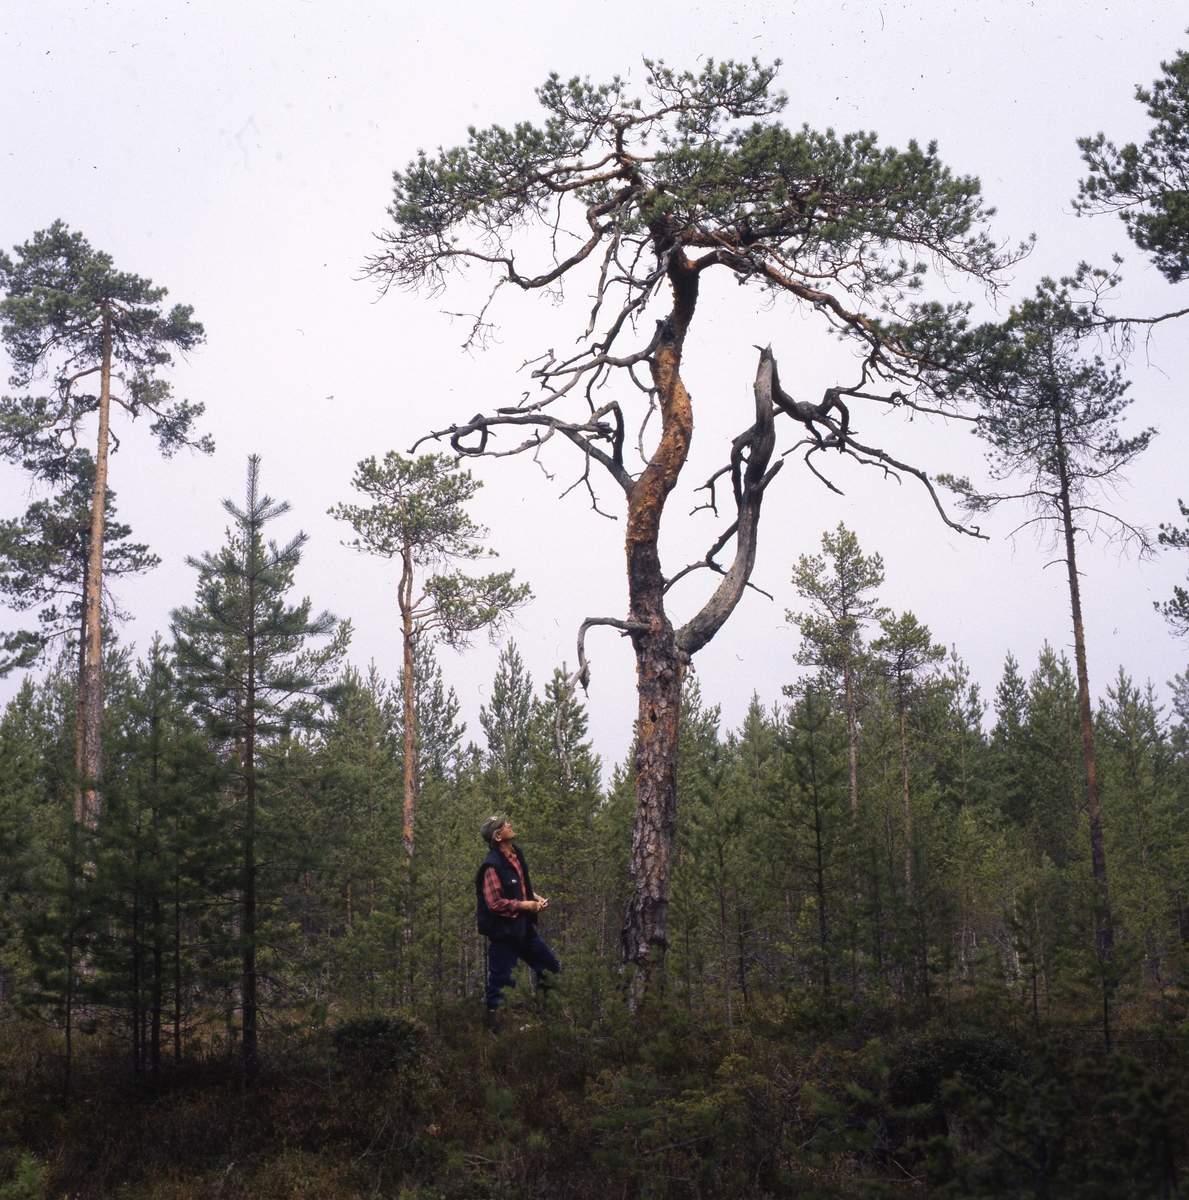 Krokig myrtall (Limans sva´ på Utegårds), 22 maj 1999. En man står intill tallstammen och tittar upp mot tallkronan.